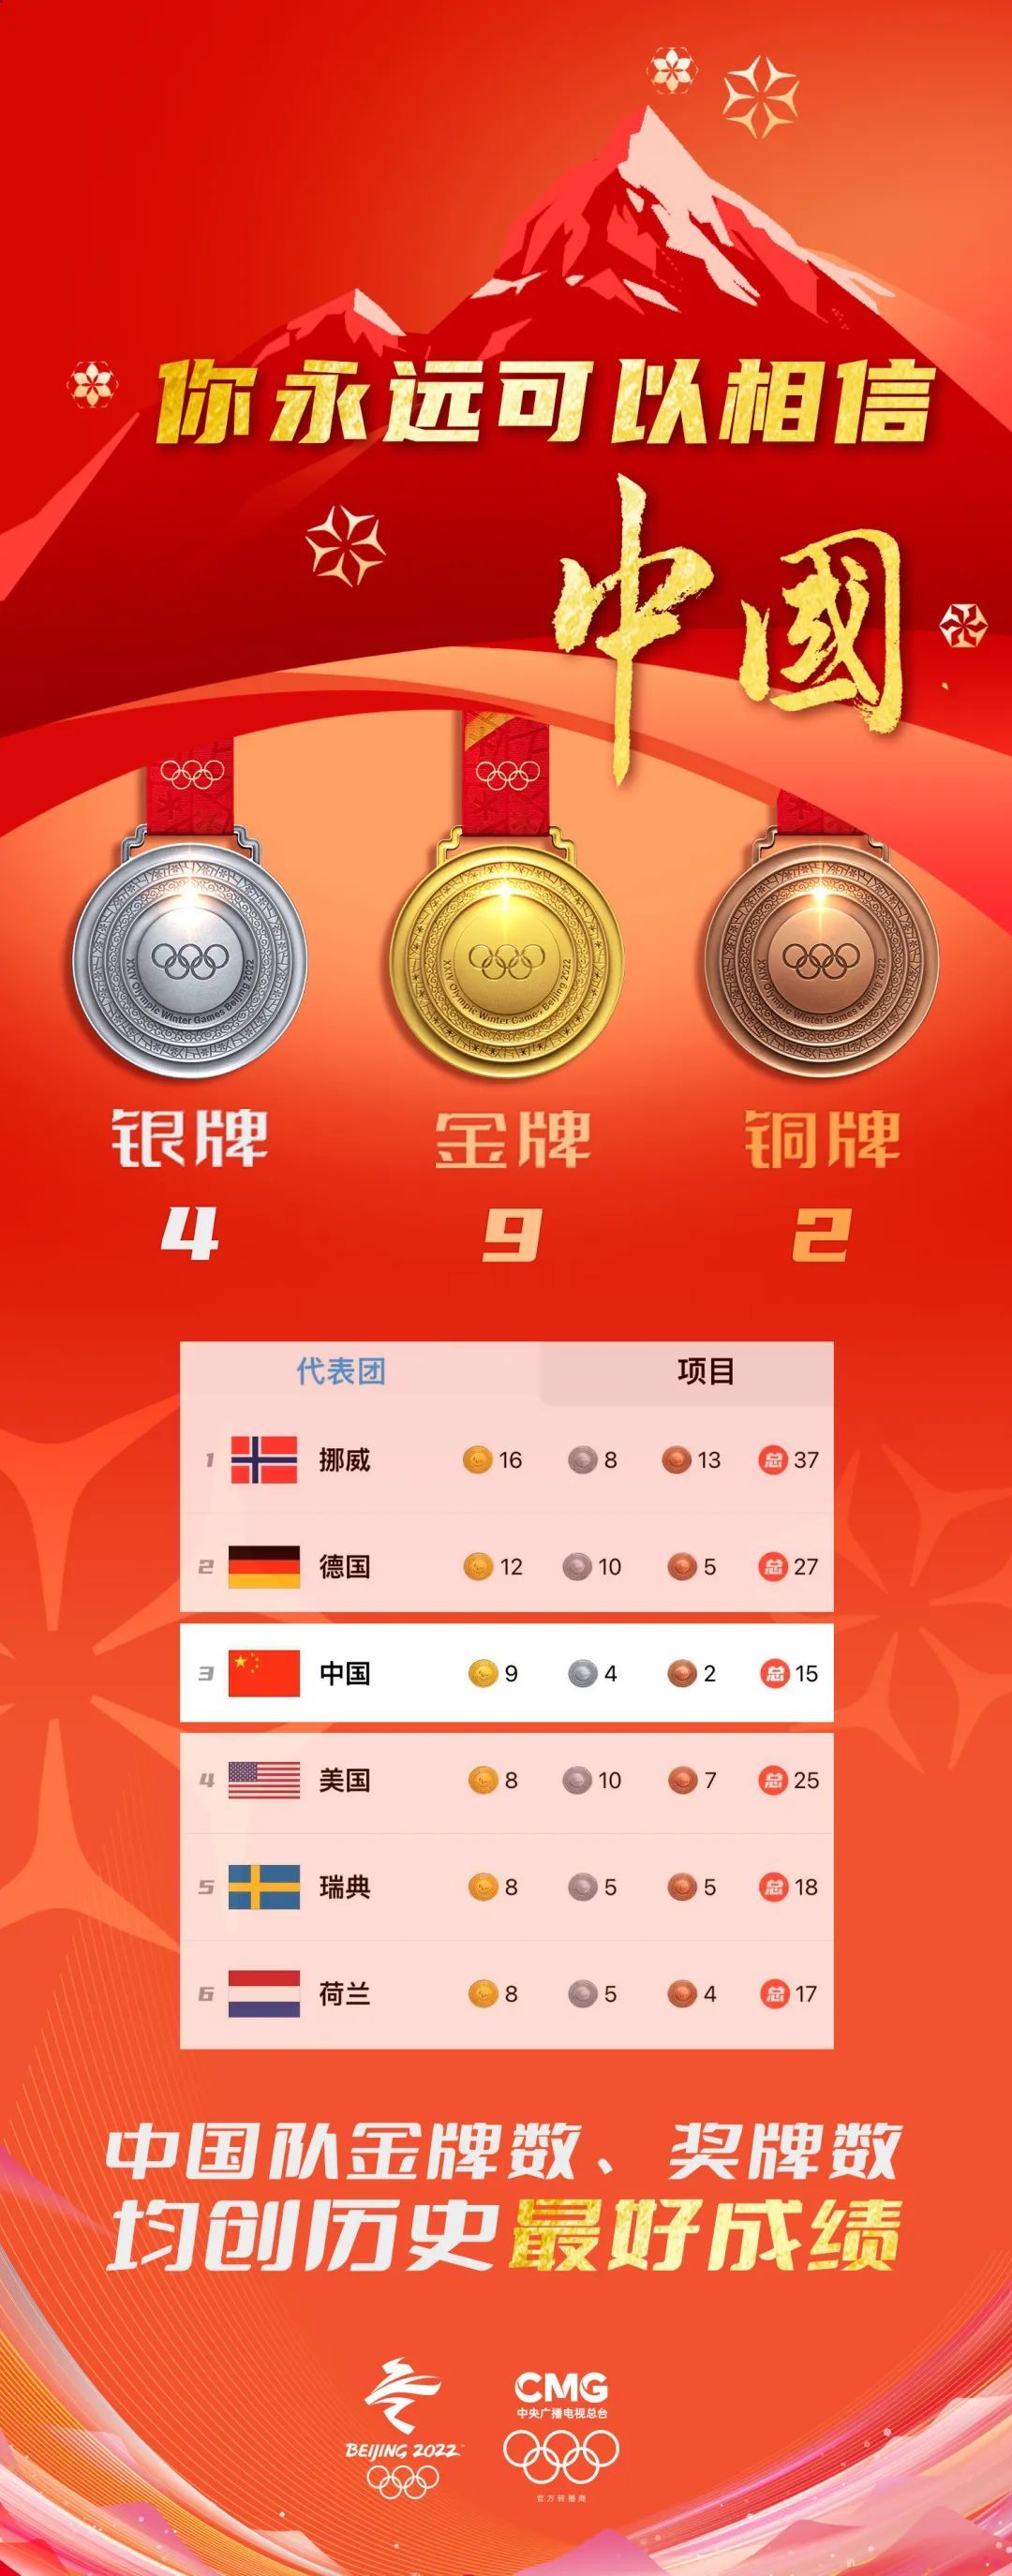 北京东奥会金牌榜图片